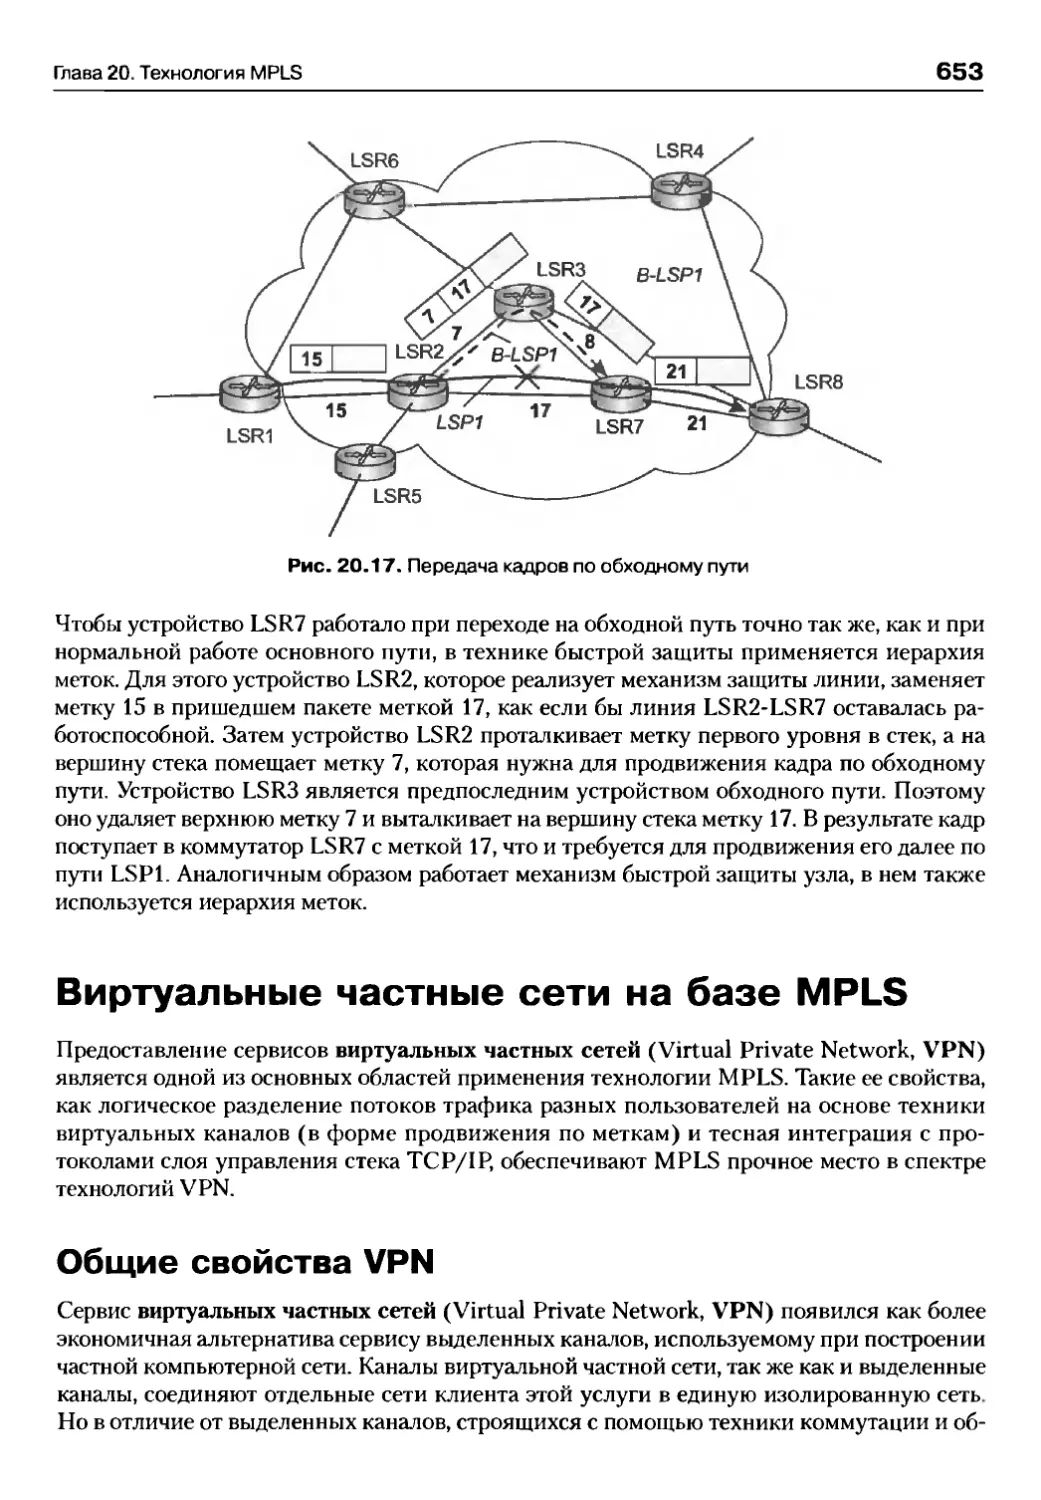 Виртуальные частные сети на базе MPLS